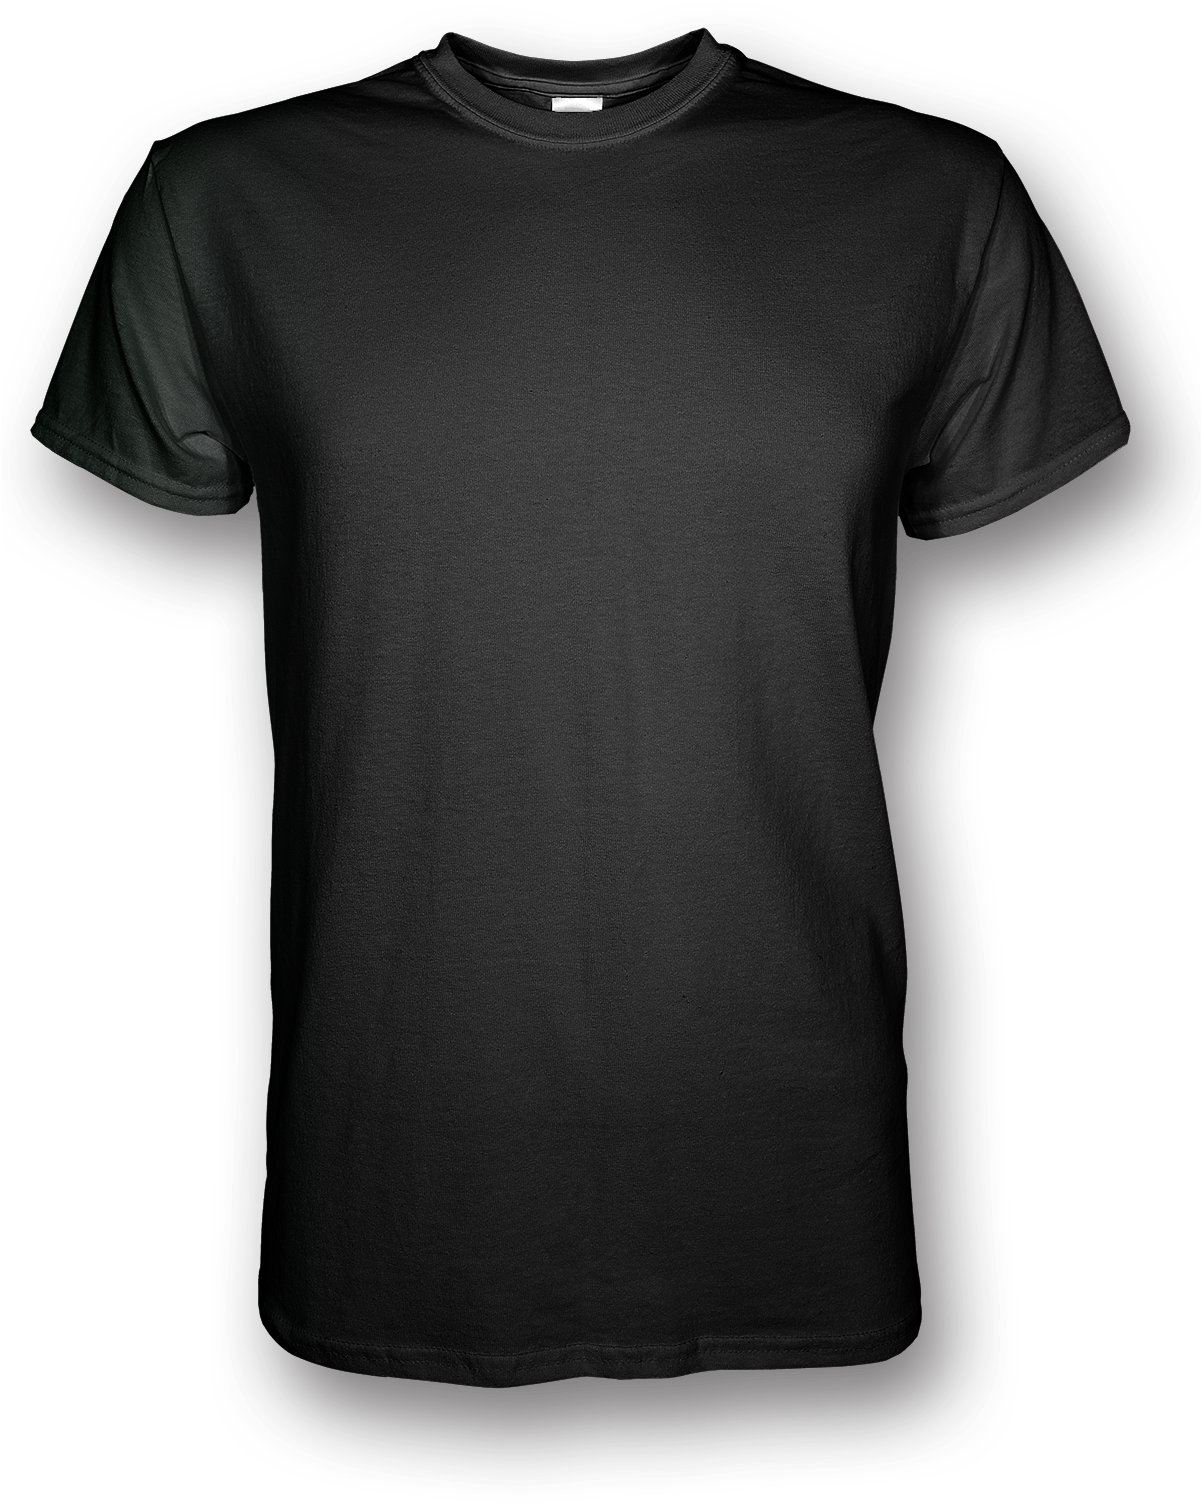 Blank Black T Shirt Png - T-shirt (1200x1800), Png Download